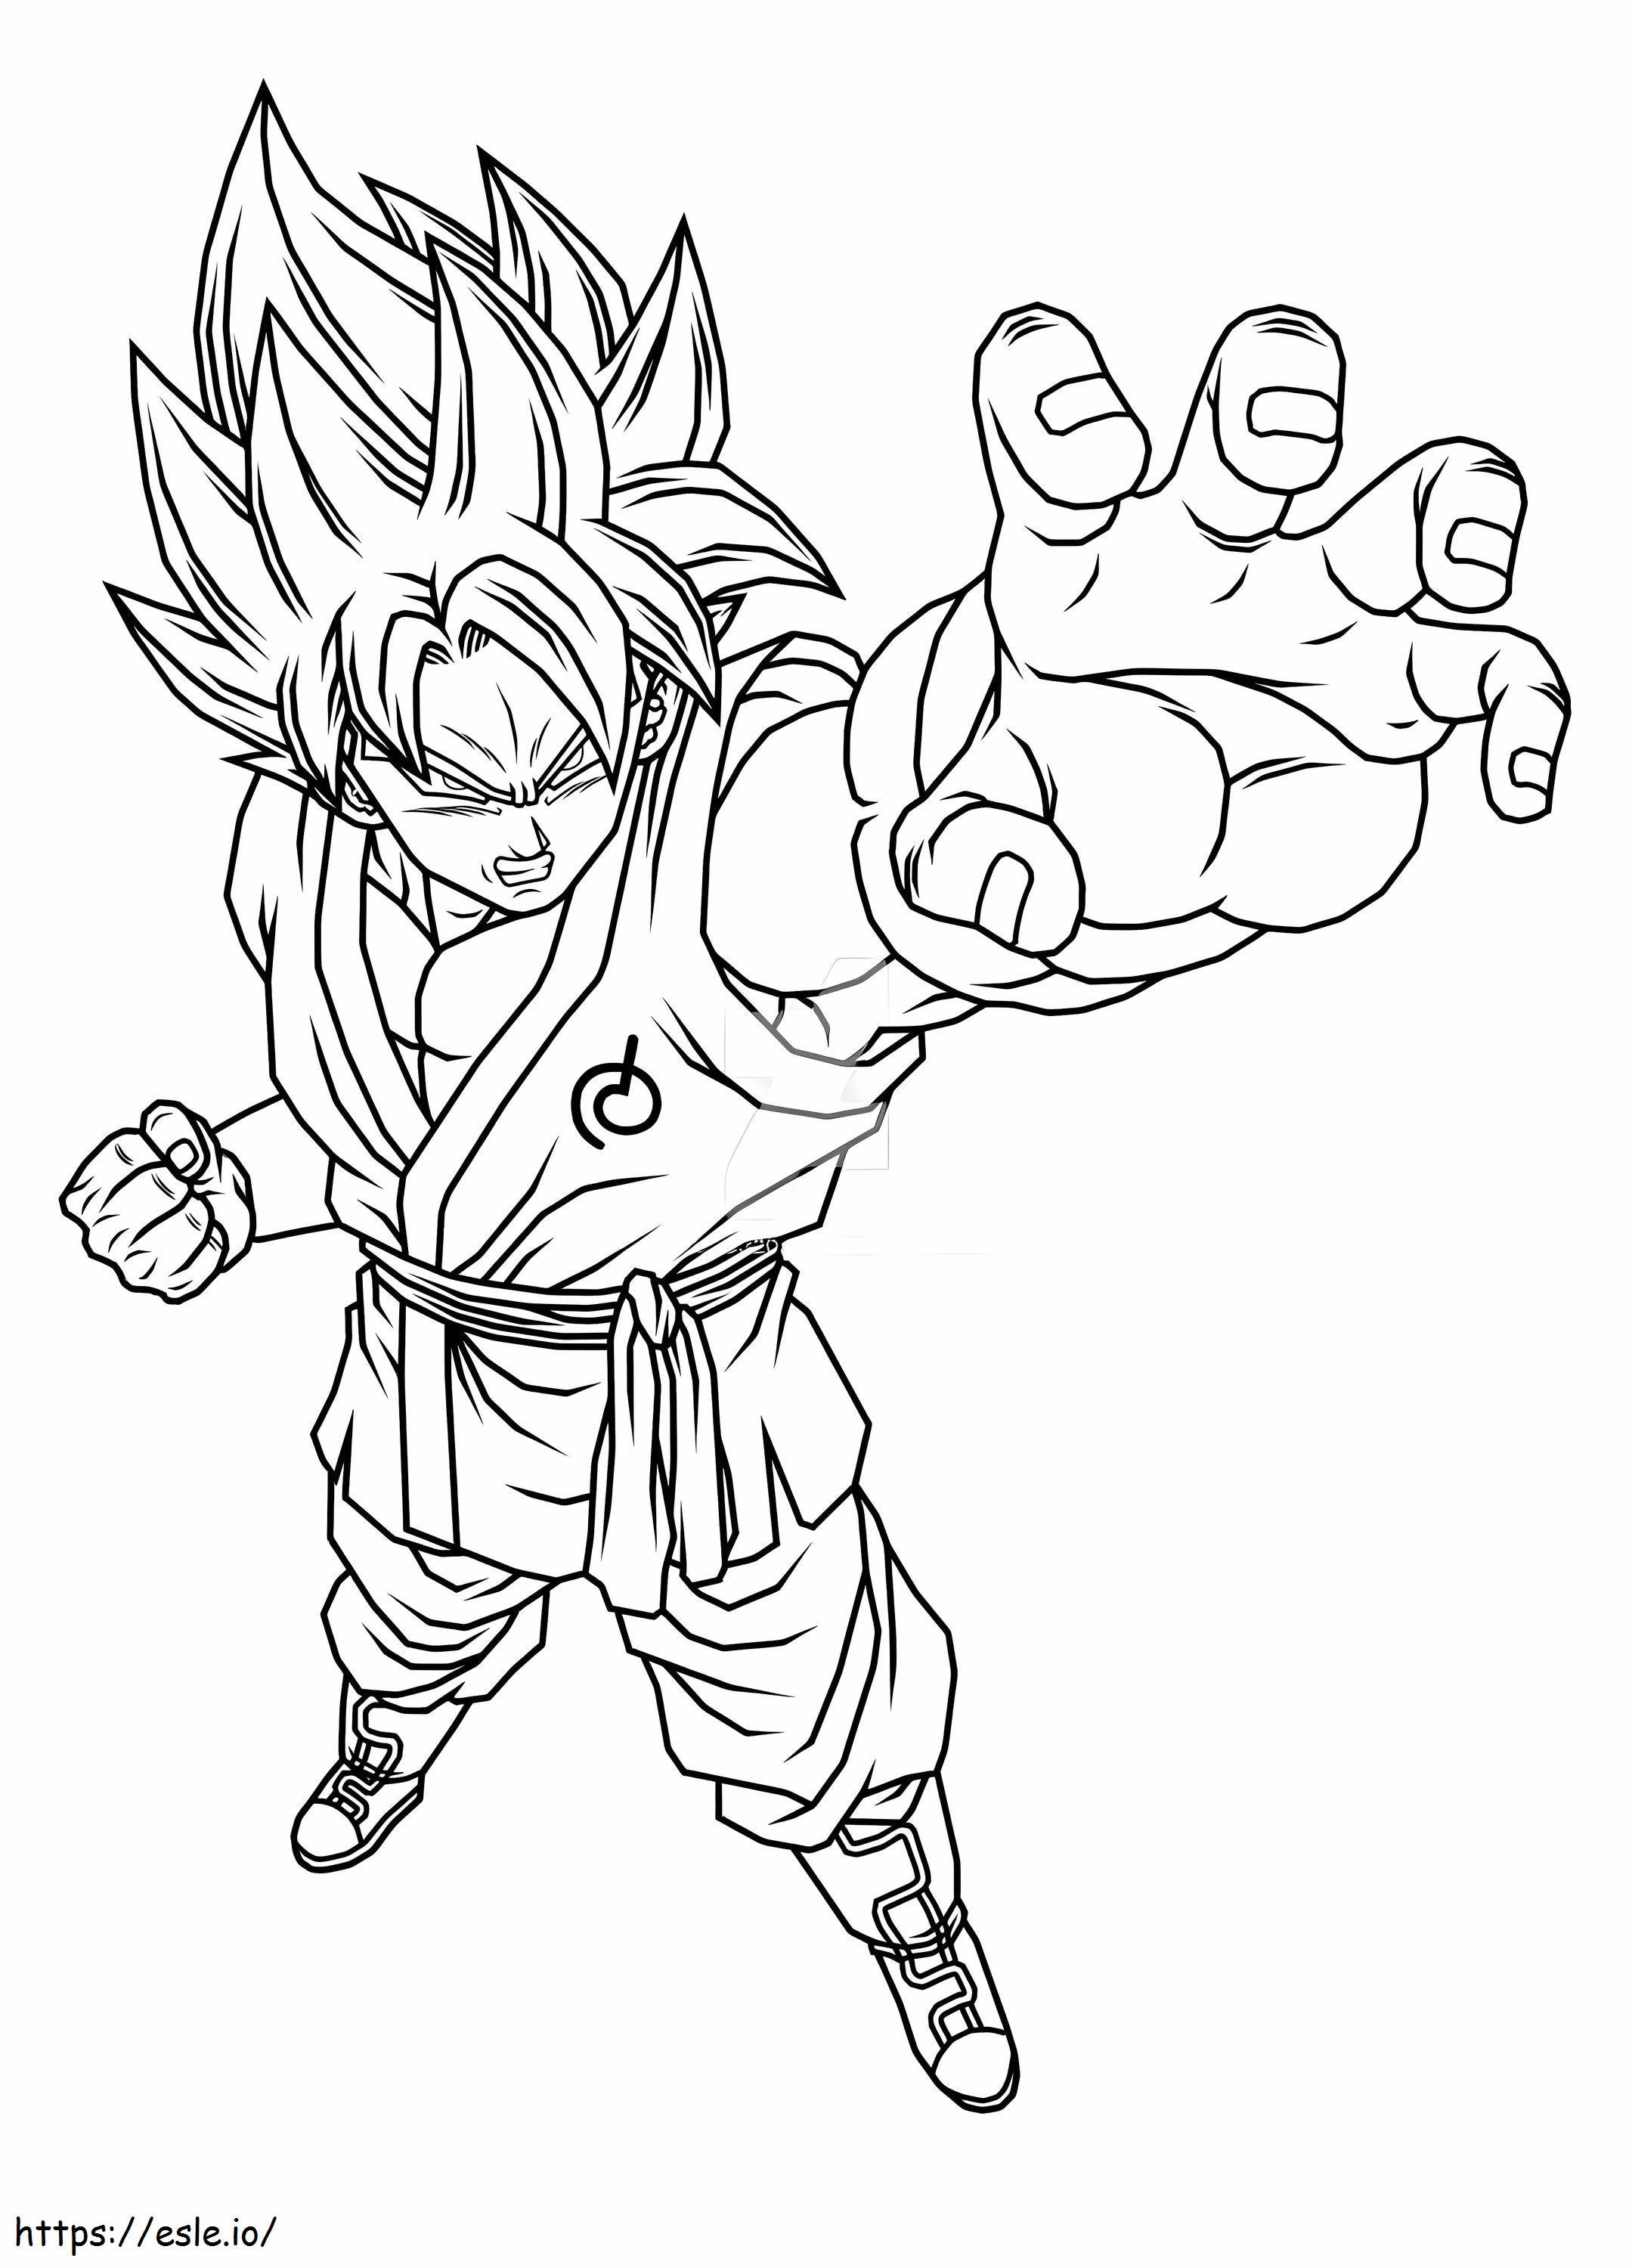 Angry Goku coloring page